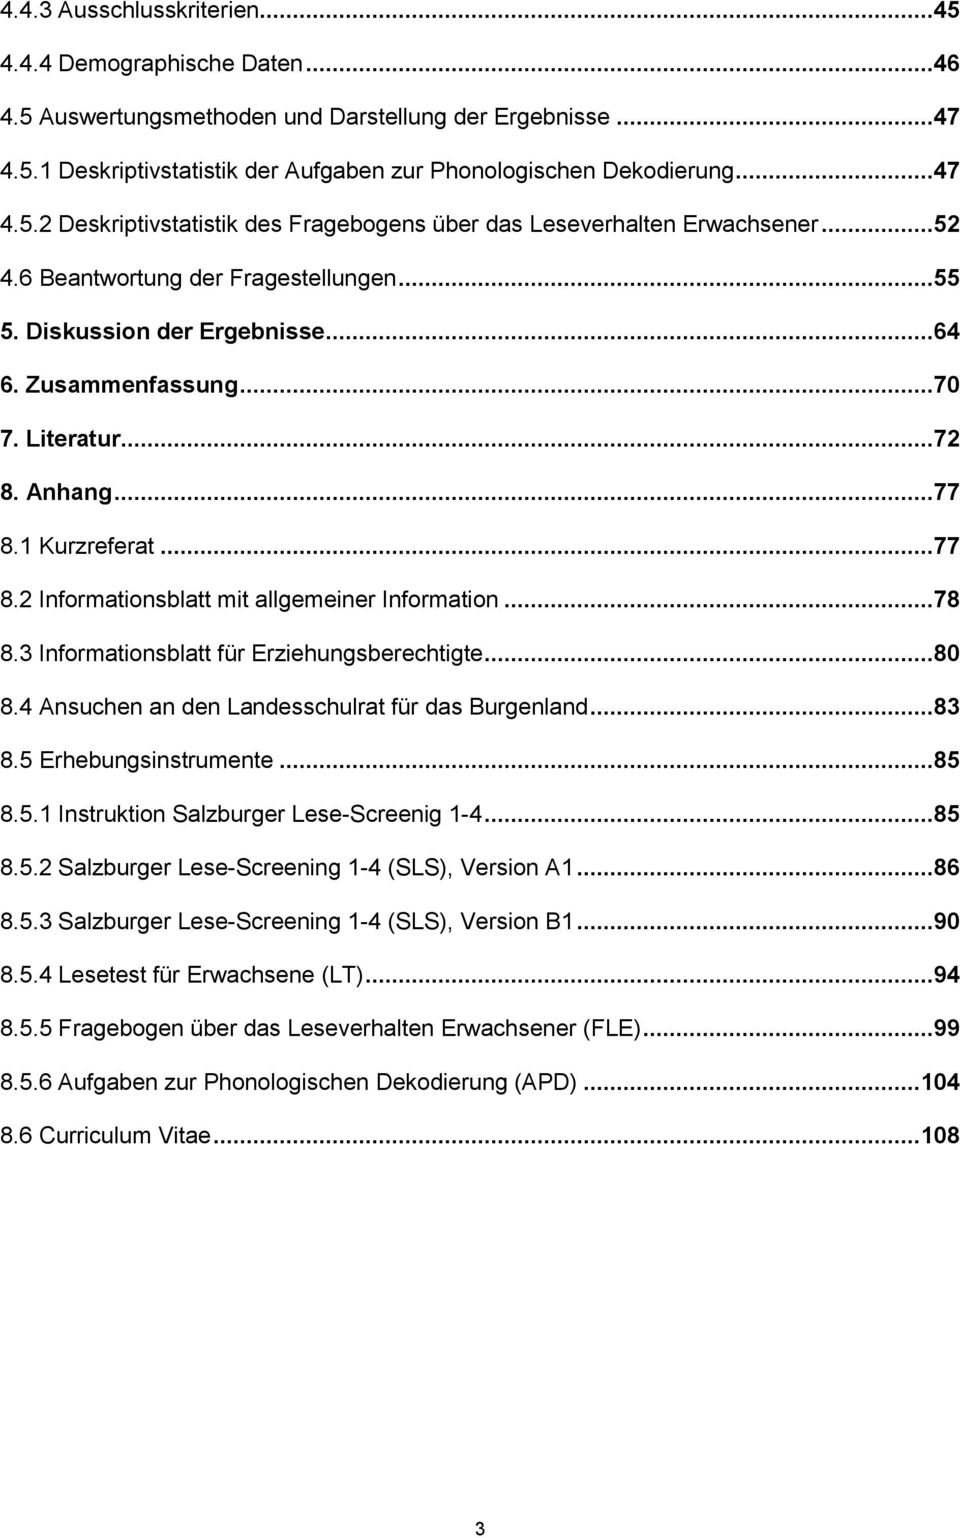 ..78 8.3 Informationsblatt für Erziehungsberechtigte...80 8.4 Ansuchen an den Landesschulrat für das Burgenland...83 8.5 Erhebungsinstrumente...85 8.5.1 Instruktion Salzburger Lese-Screenig 1-4...85 8.5.2 Salzburger Lese-Screening 1-4 (SLS), Version A1.